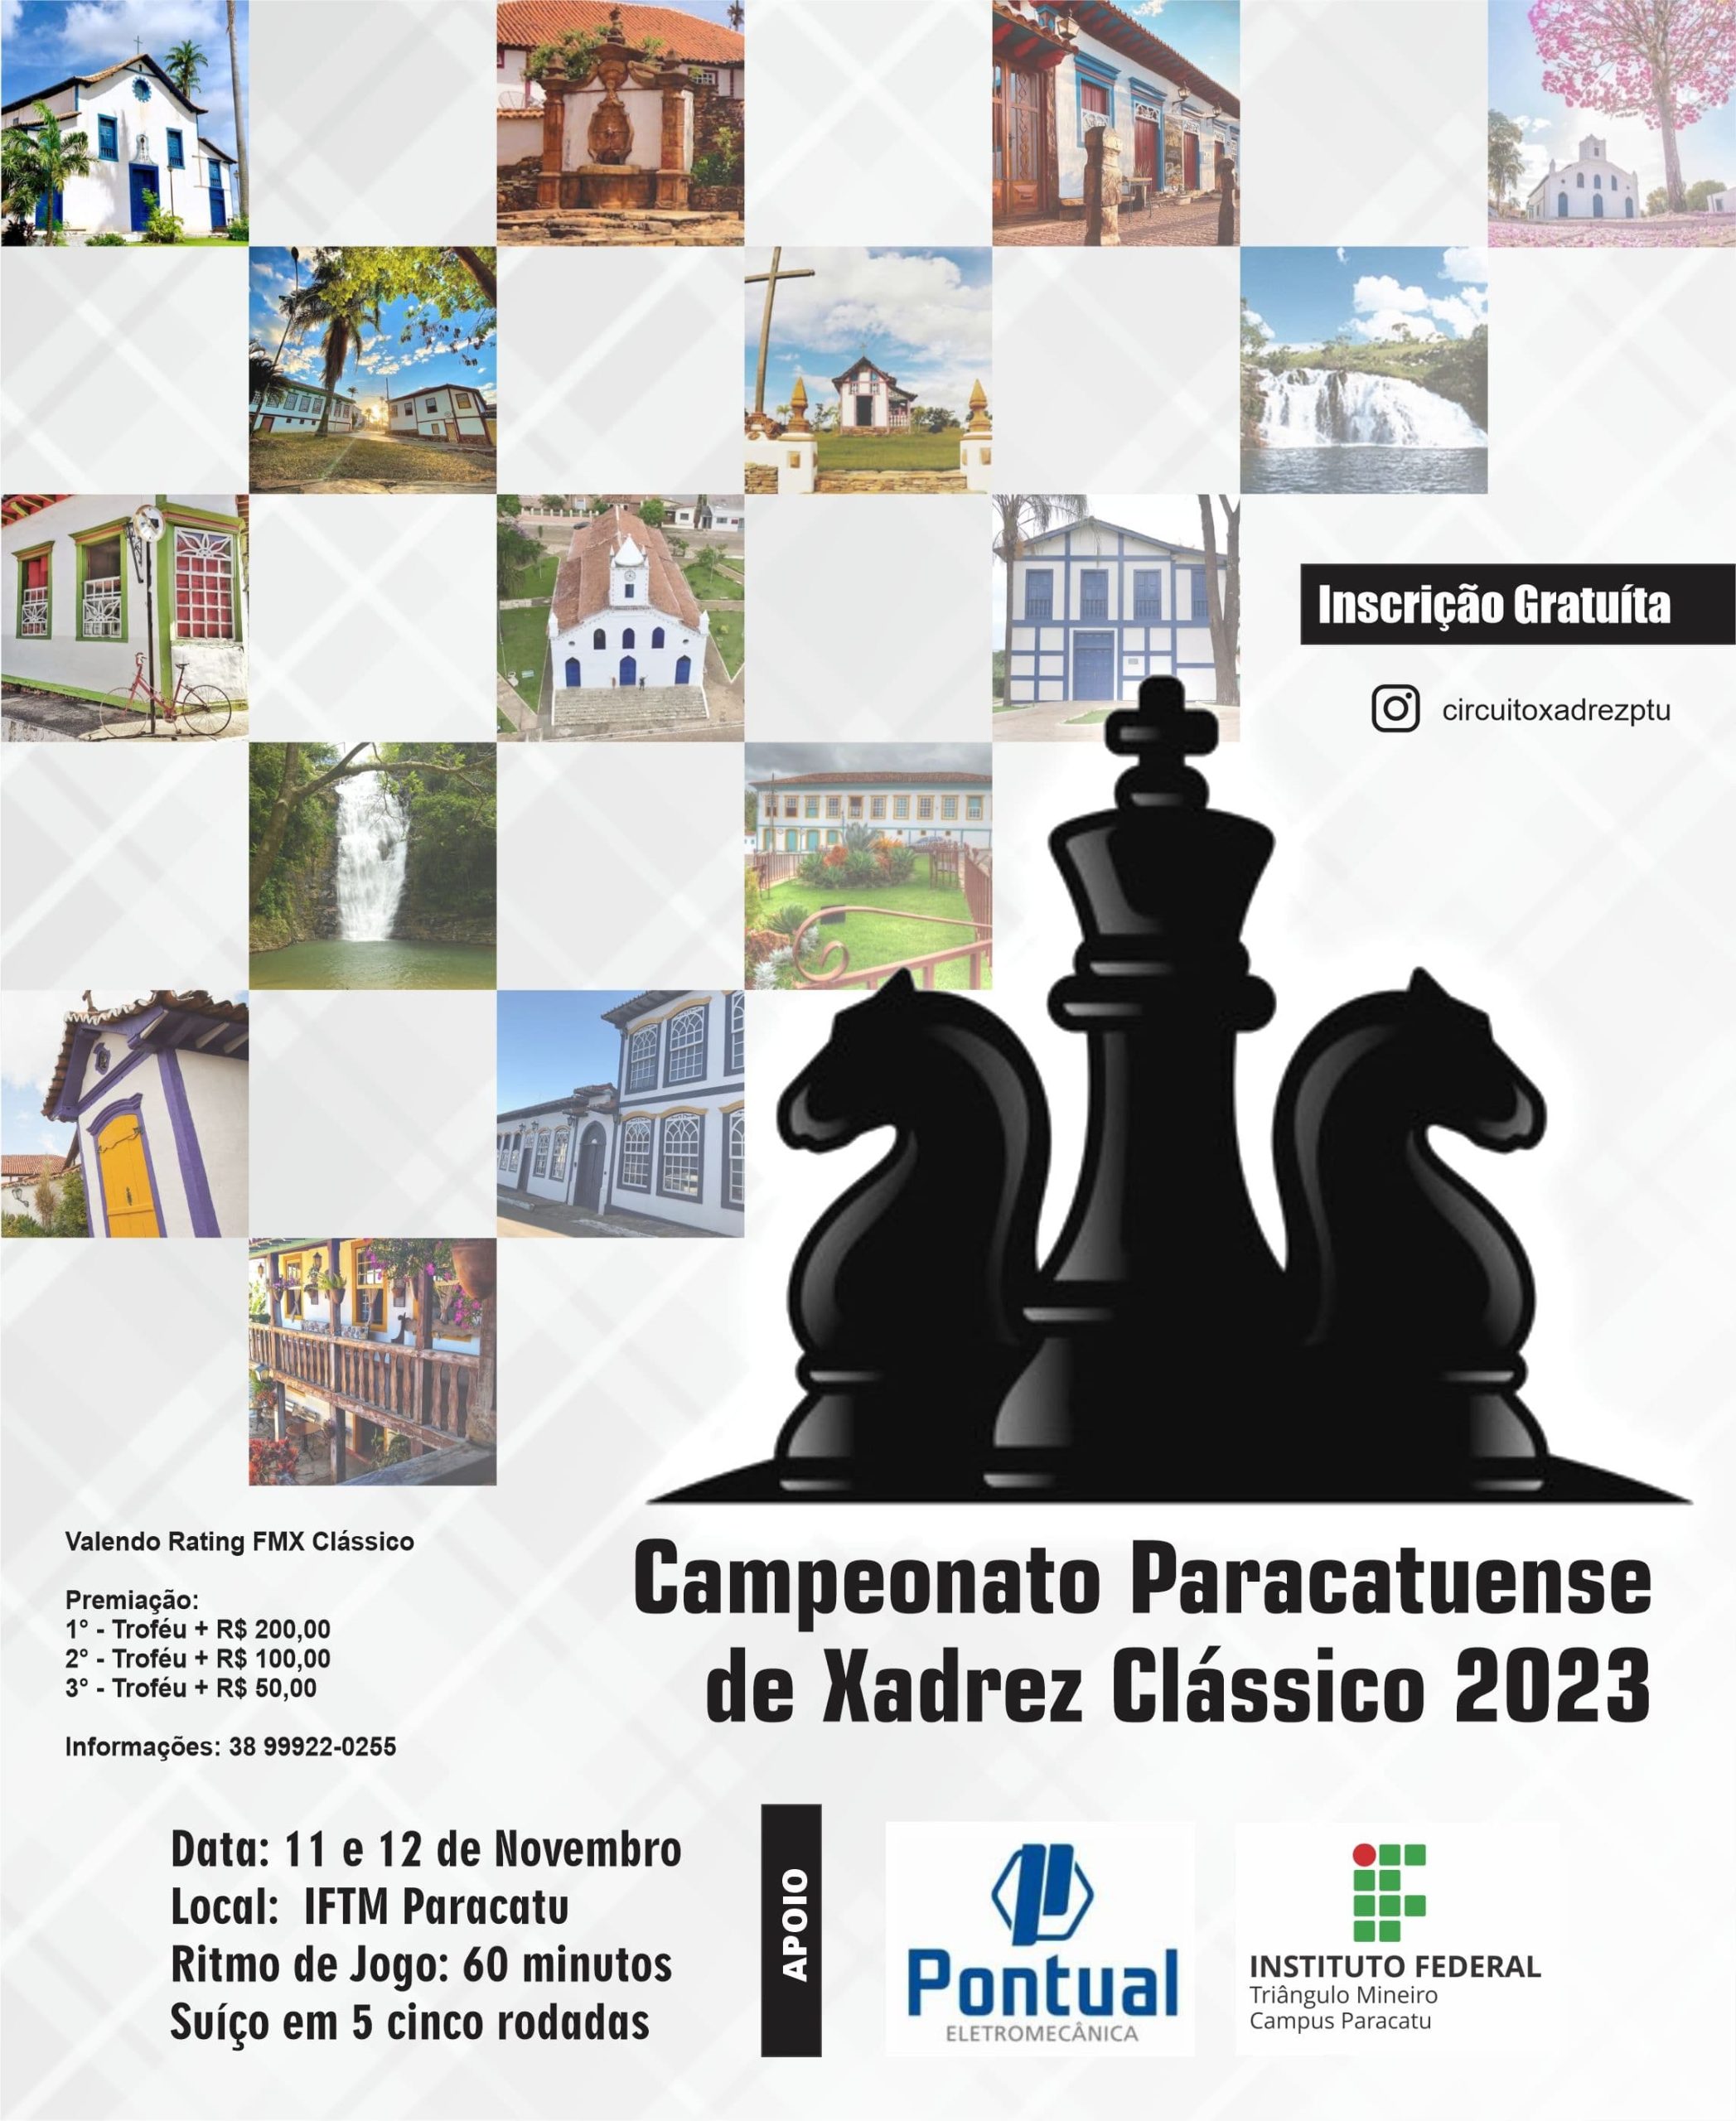 24/07/2022 – Circuito Paracatuense de Xadrez Rápido (Paracatu/MG